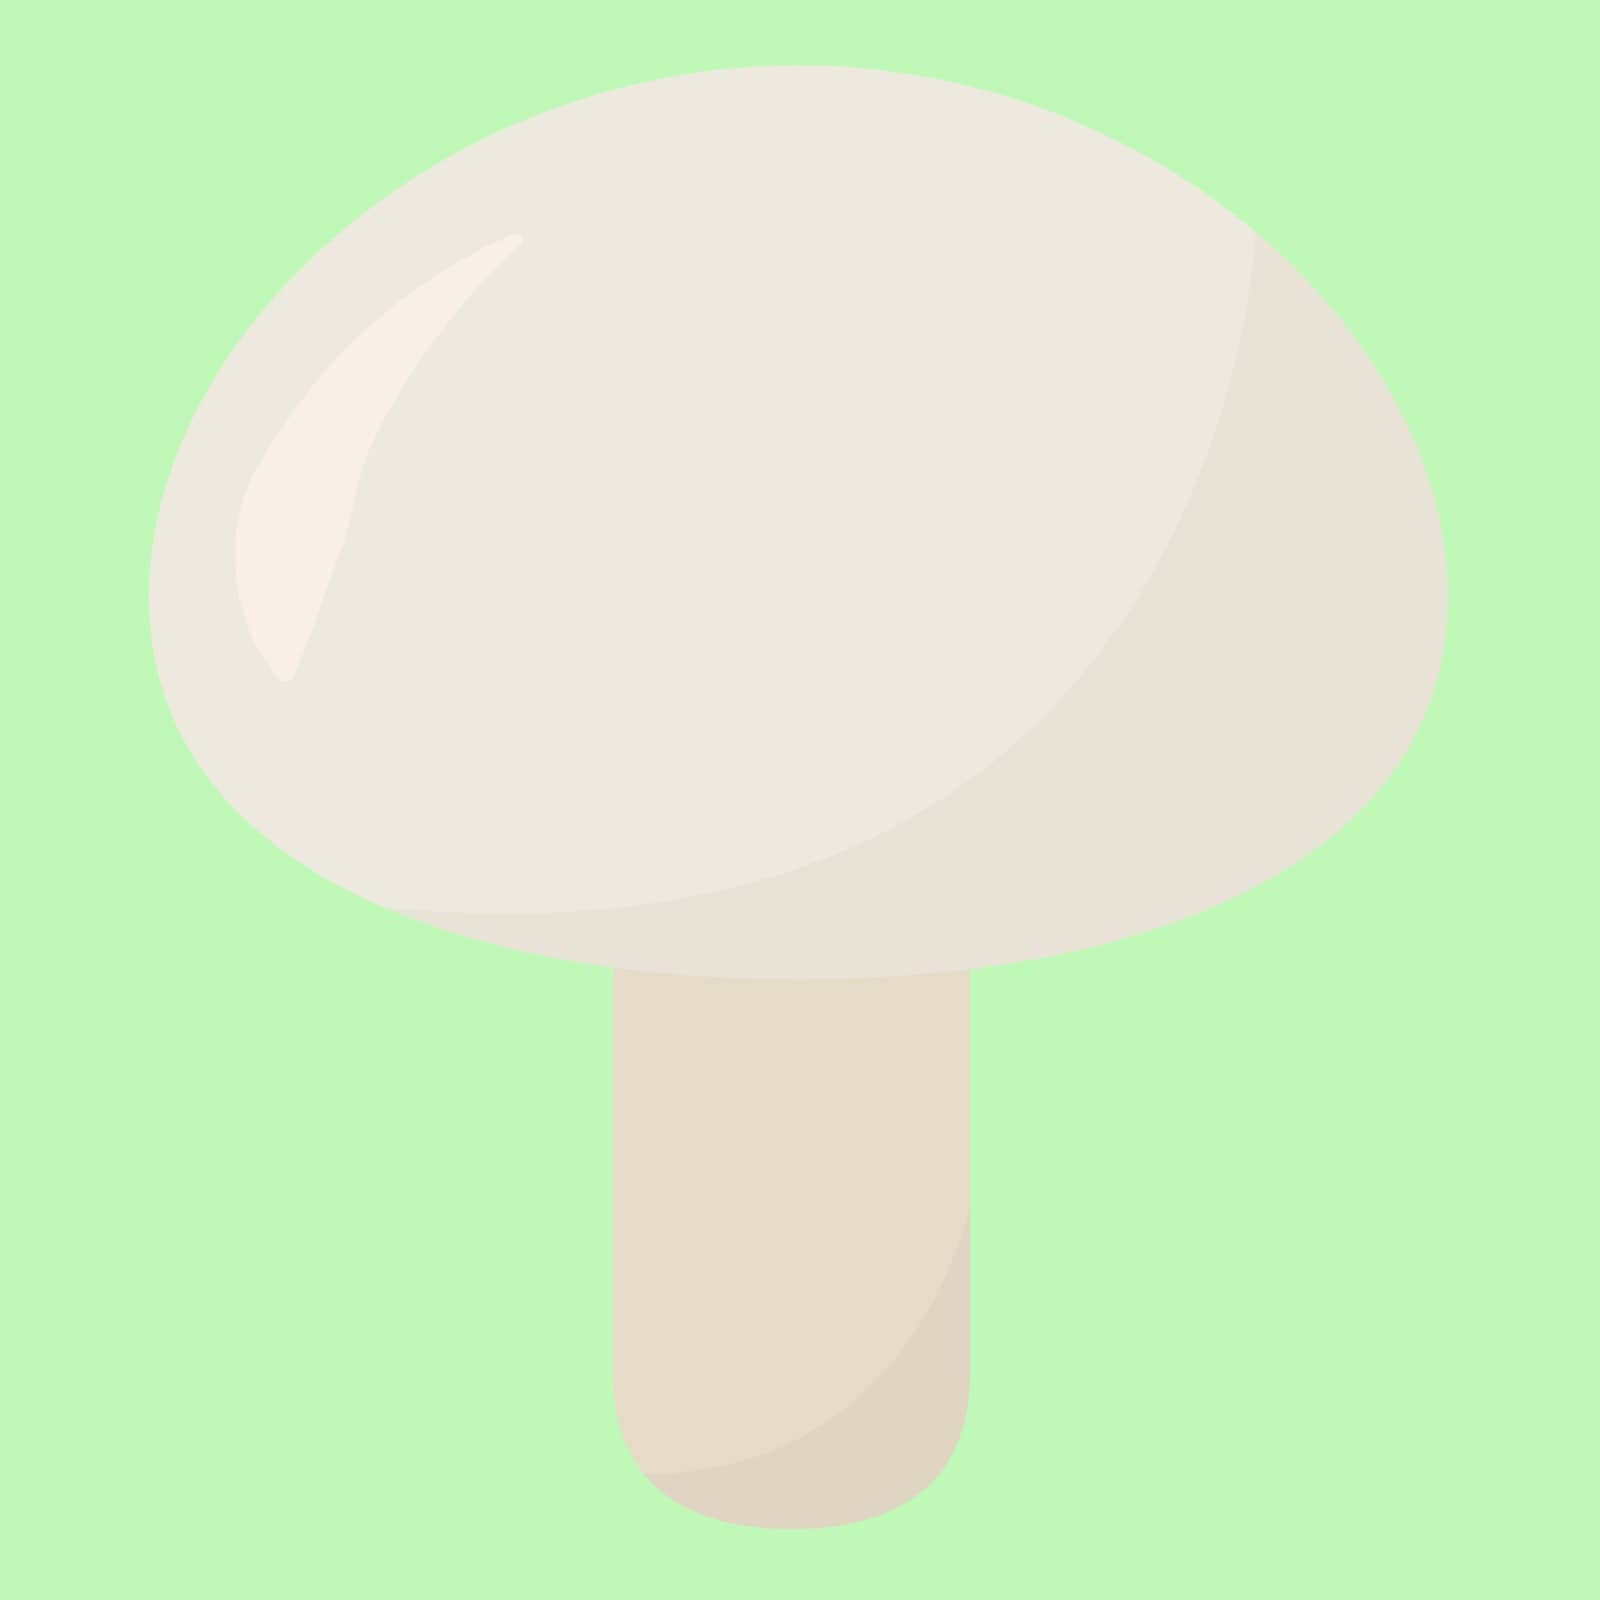 White mushroom, illustration, vector on white background.